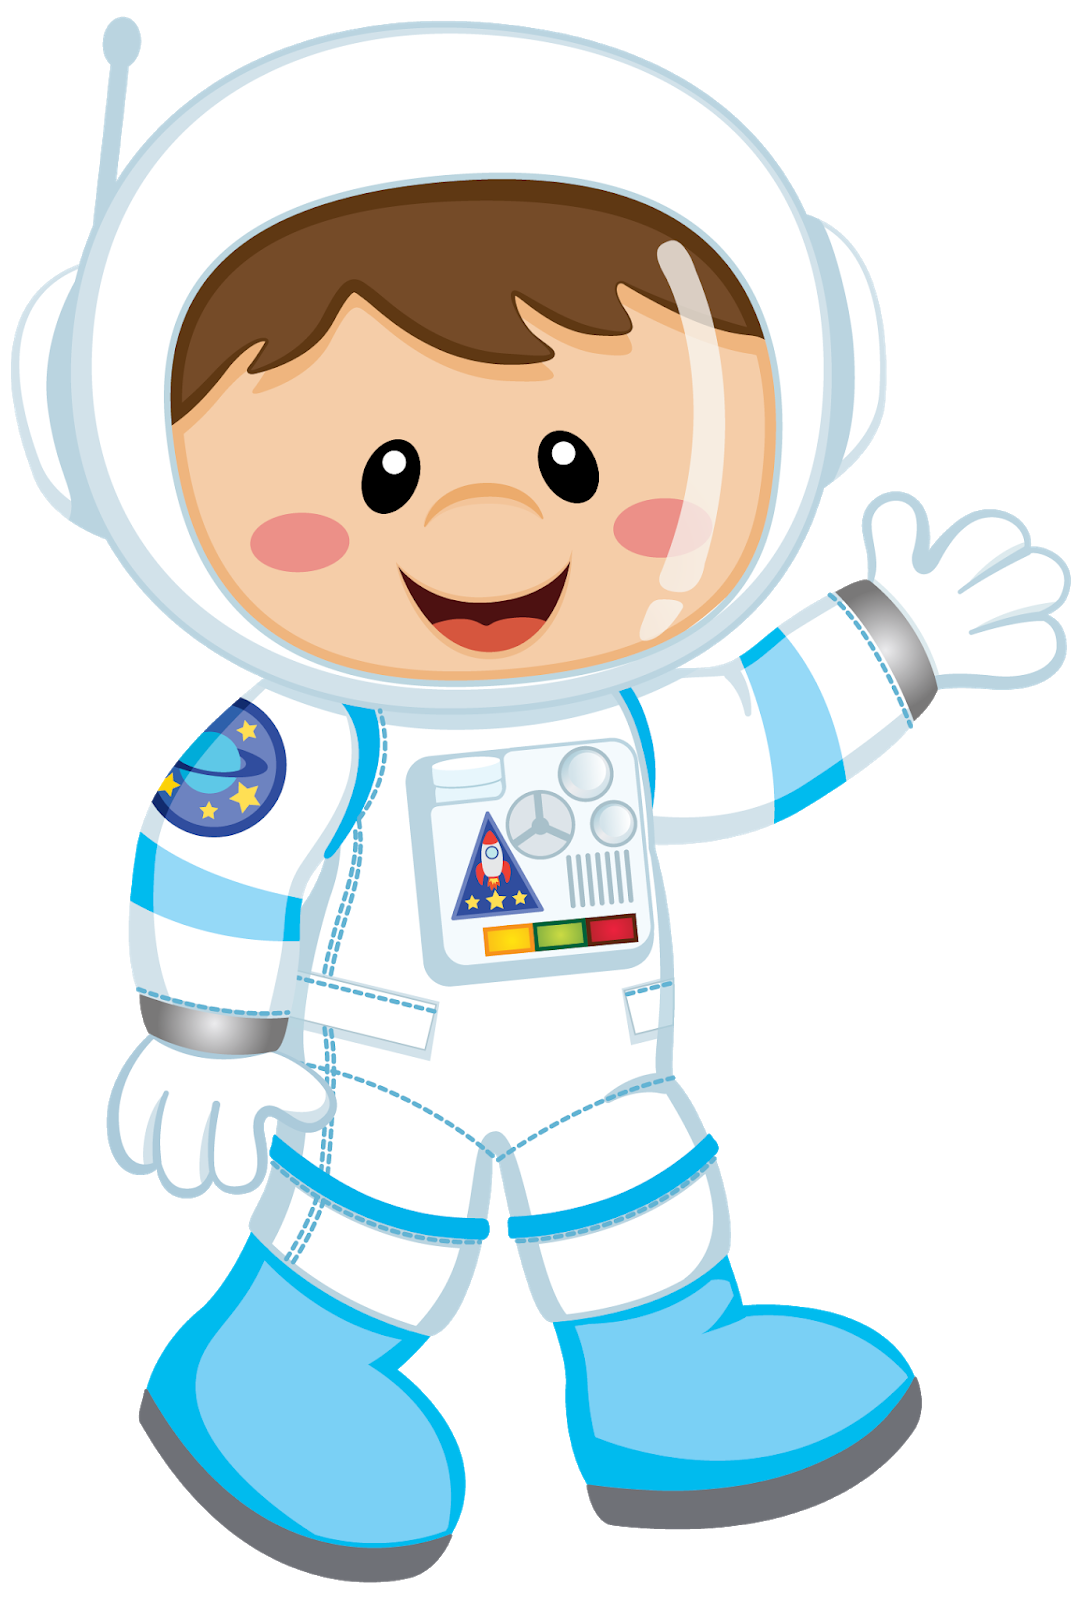 Скафандр картинка для детей. Иллюстрация скафандра для детей. Космонавт для детей. Человечки в скафандрах. Космонавт мультяшный.